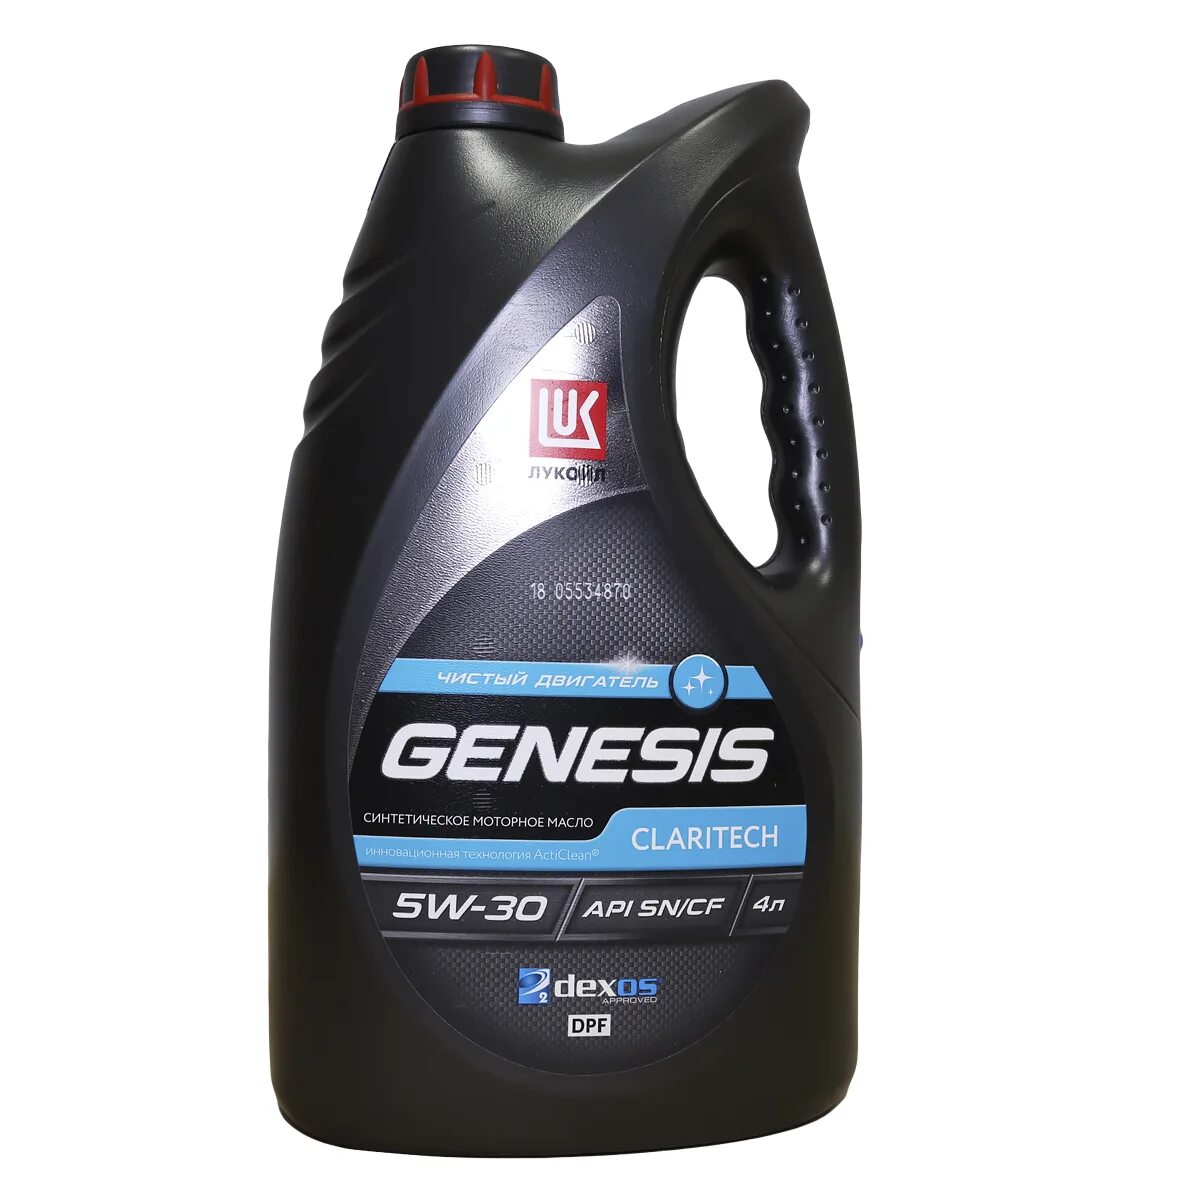 Lukoil Genesis 5w30. Lukoil Genesis Claritech 5w-30. Genesis Armortech 5w-30. Lukoil Genesis 5w30 Genesis.